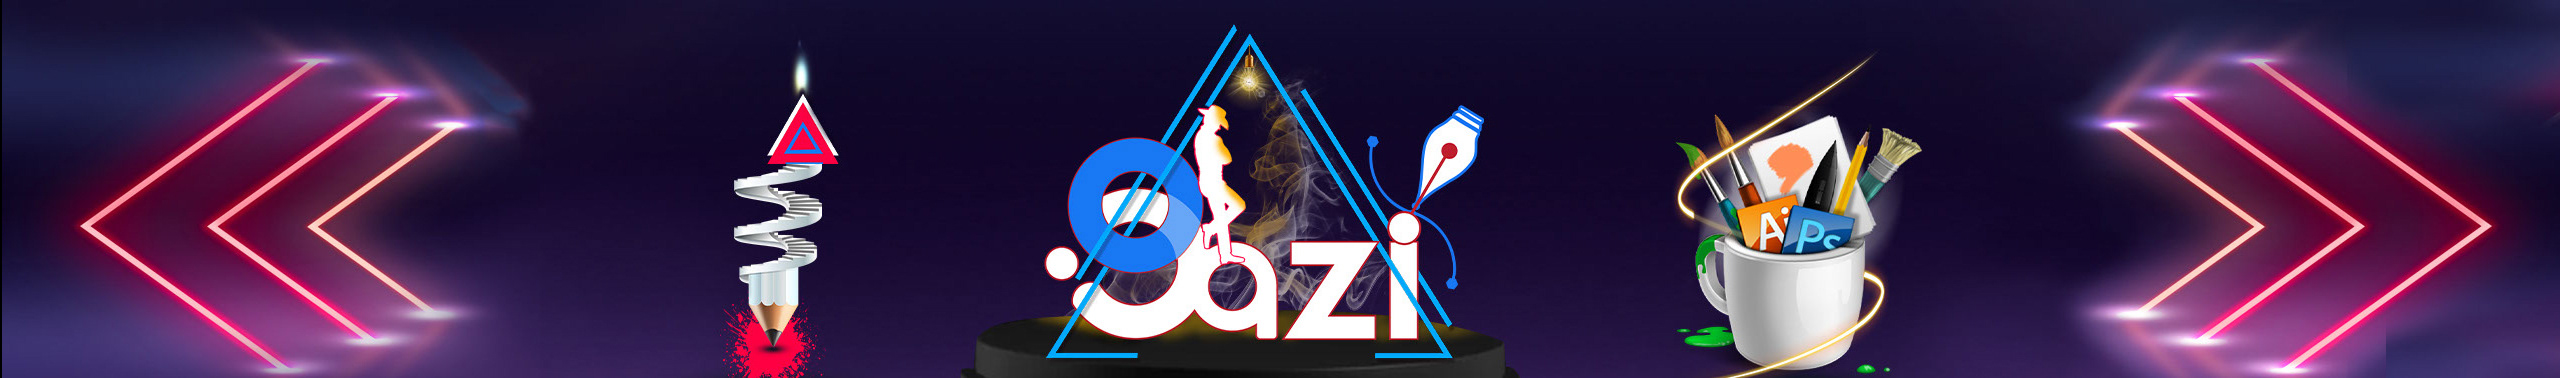 Banner de perfil de G.M. Iklaz Gazi